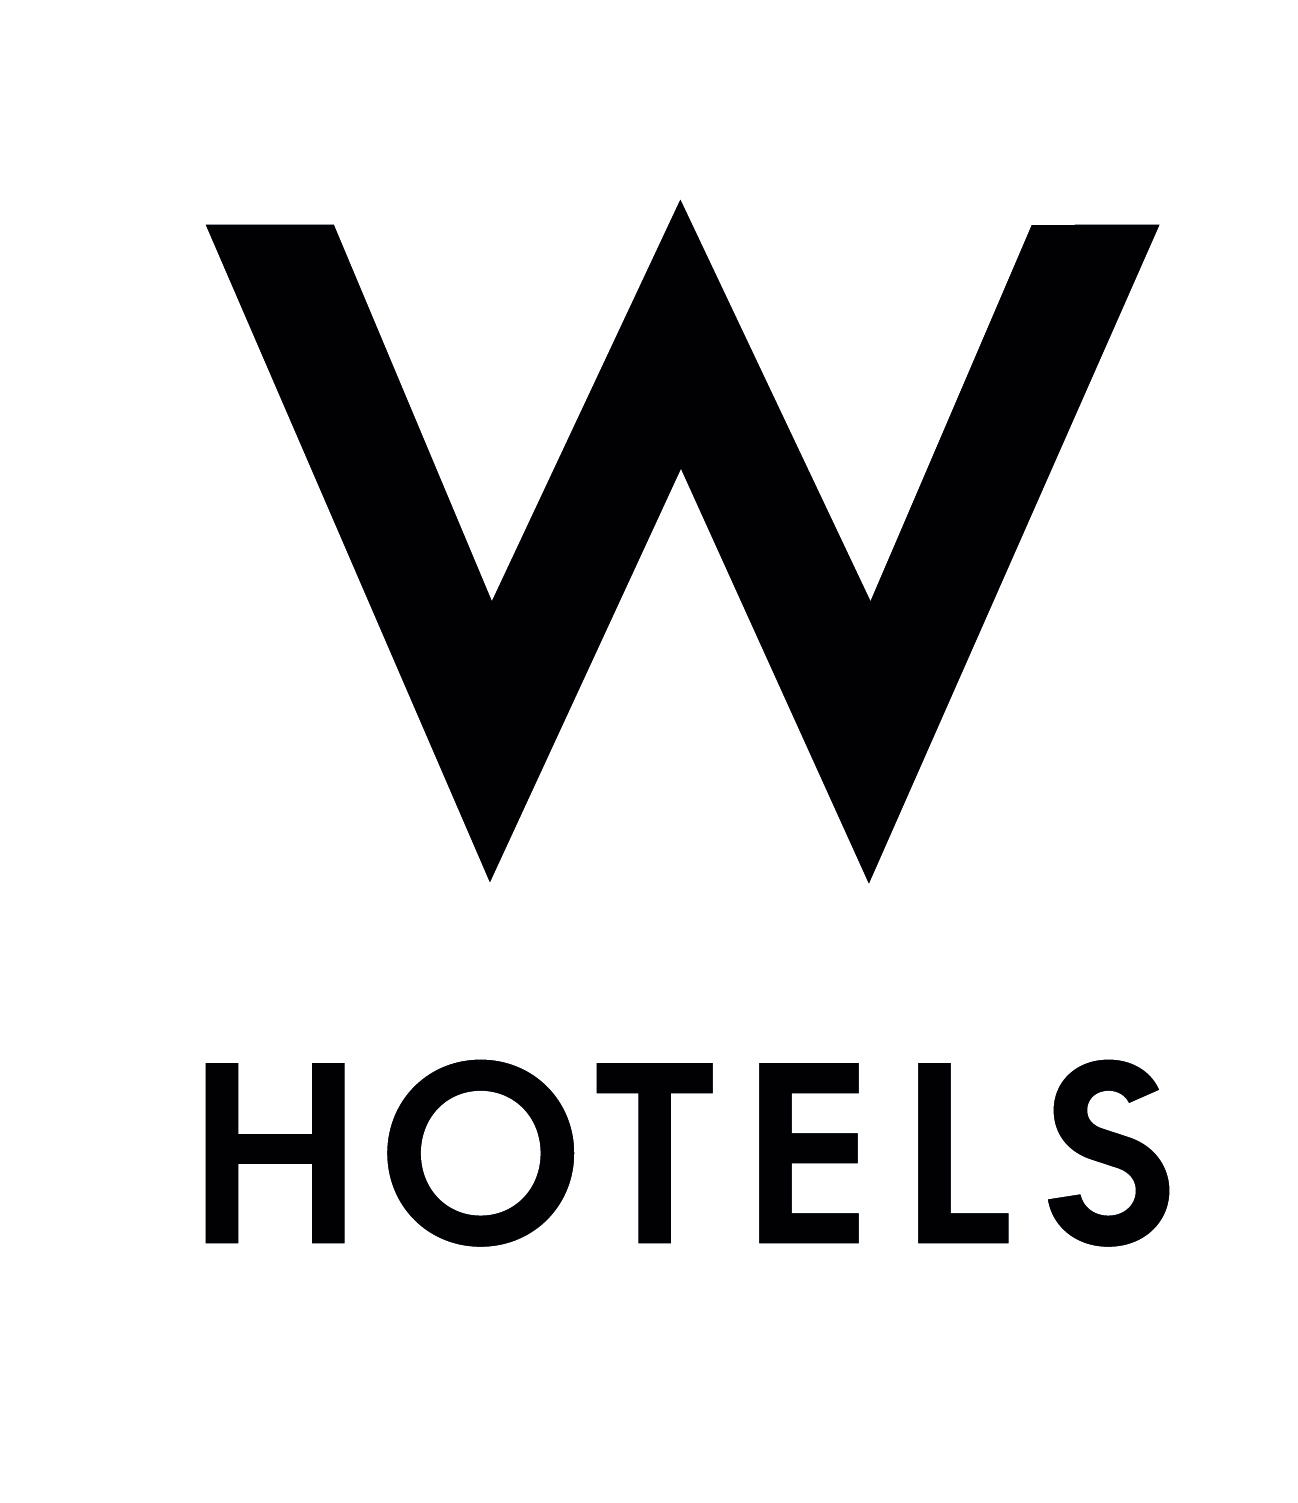 W-Logo